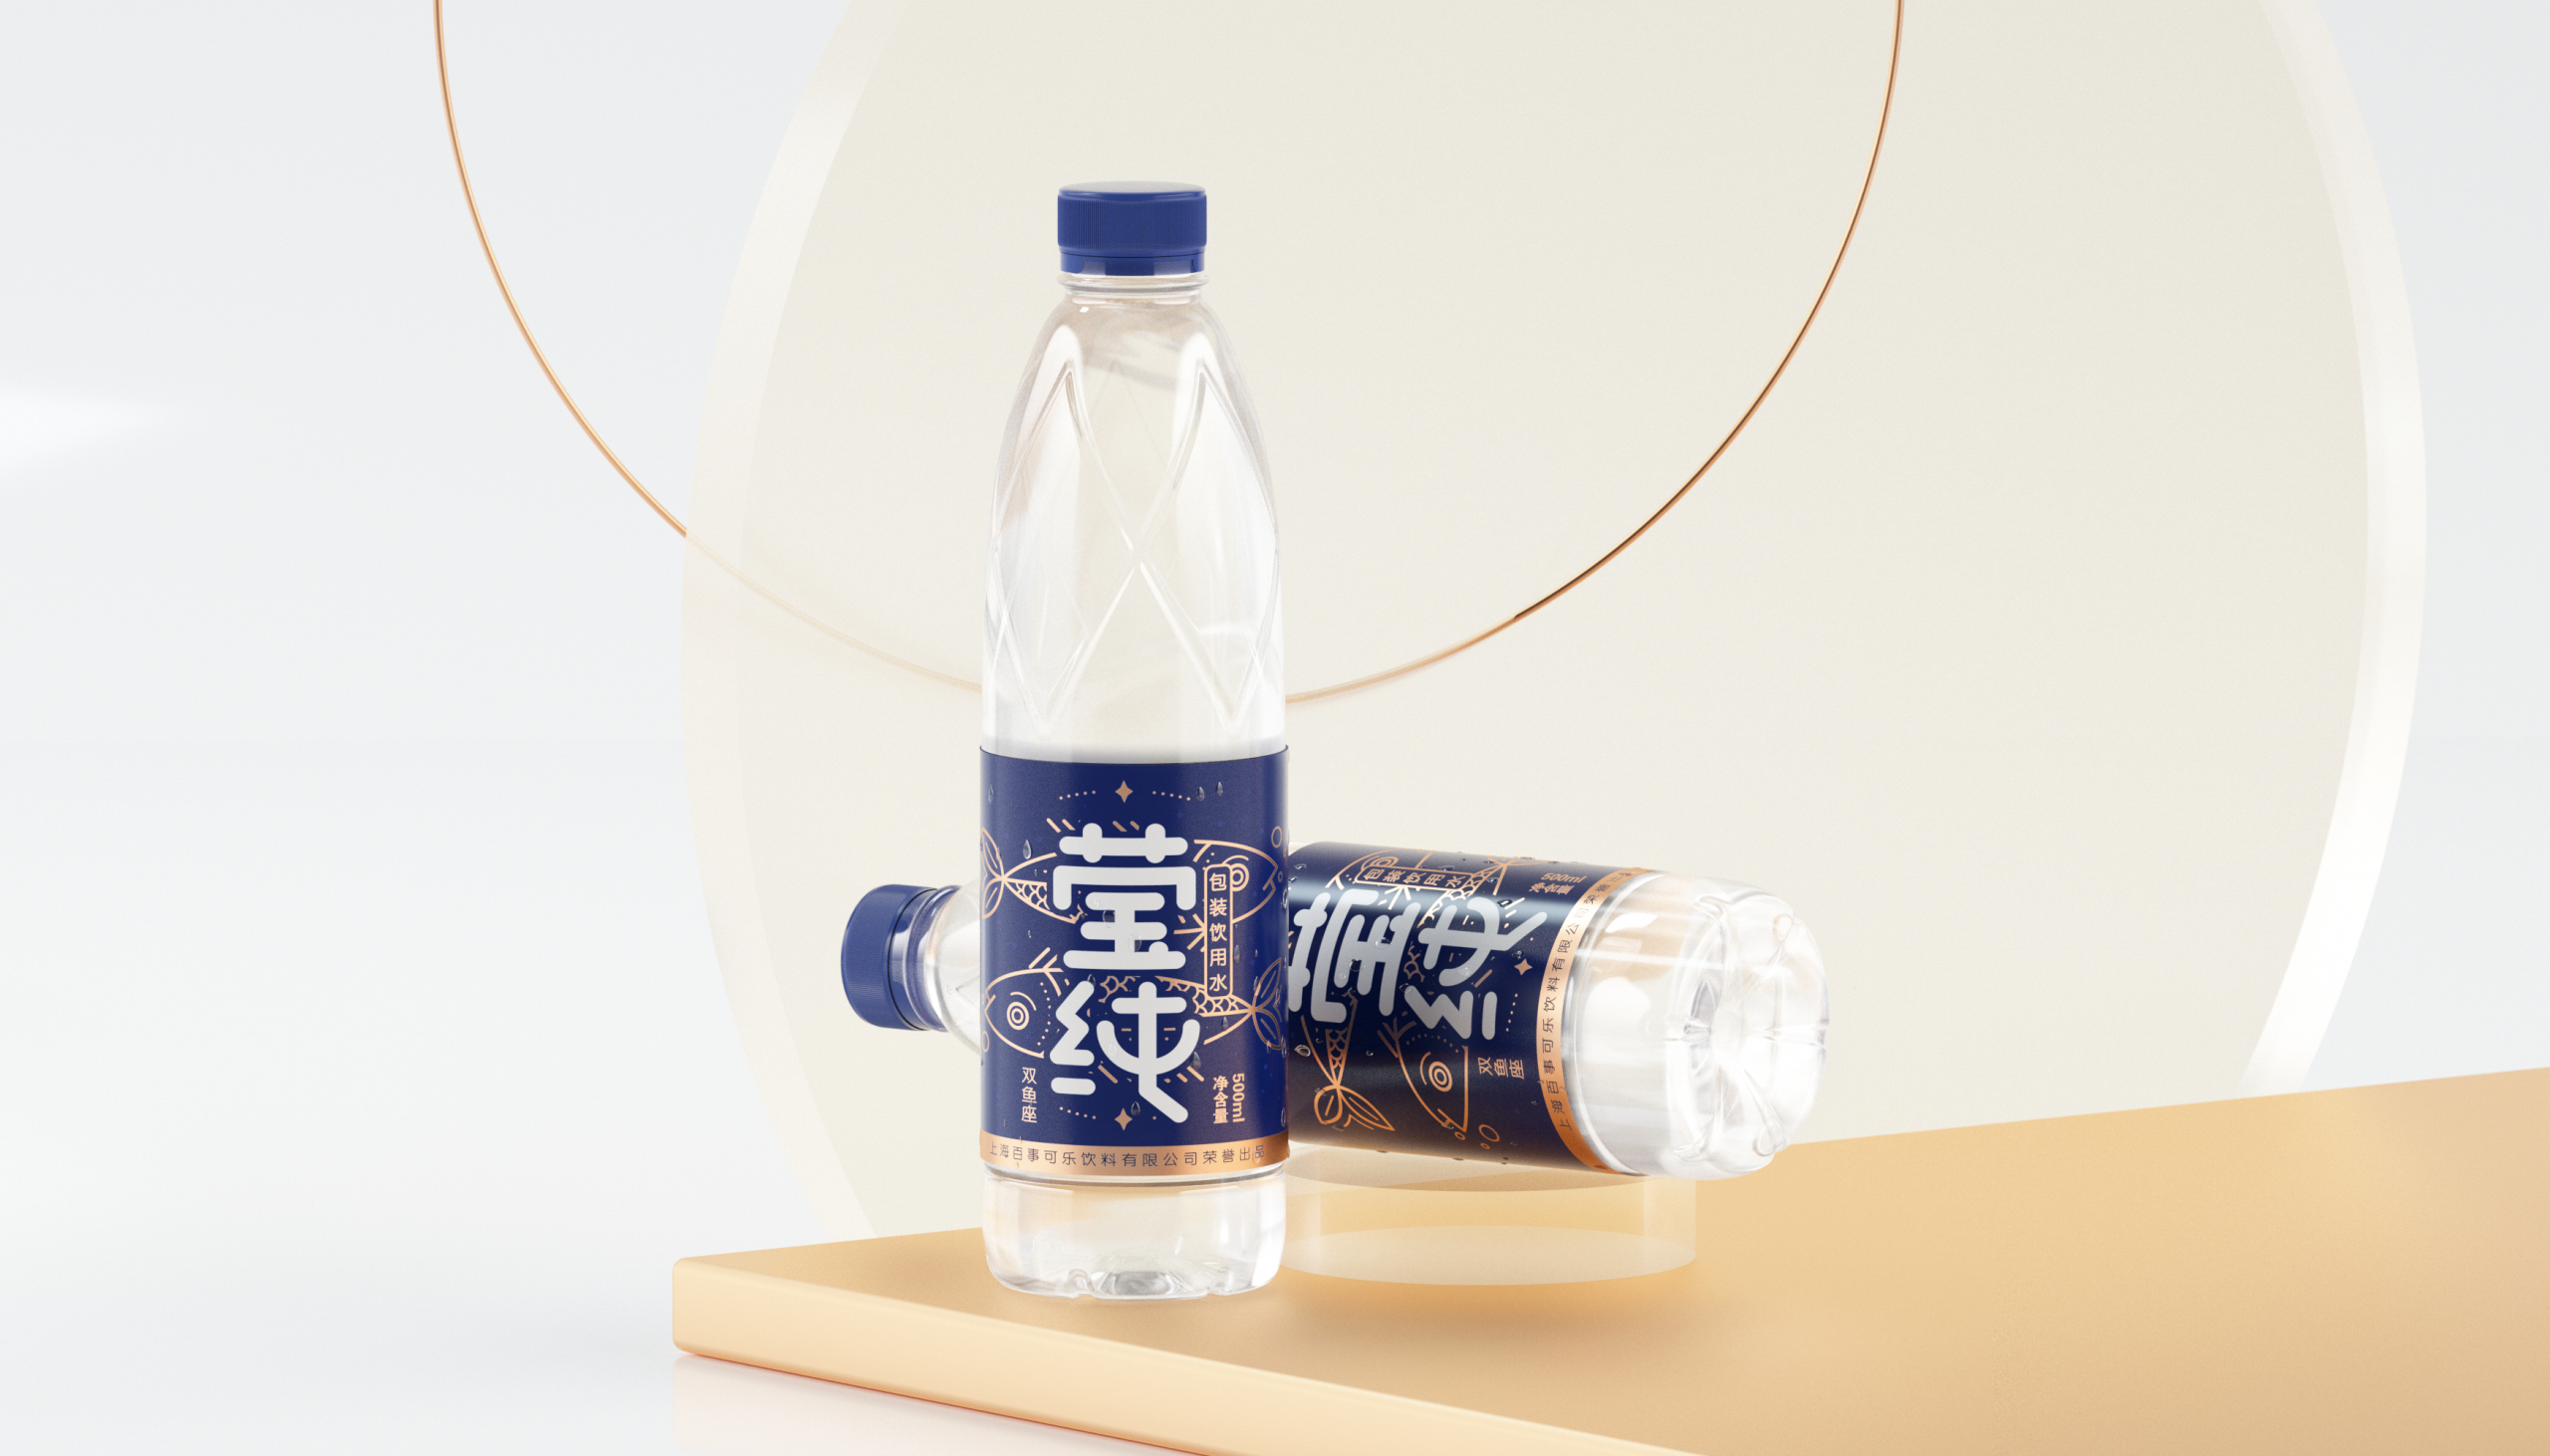 百事可乐“莹纯”十二星座矿泉水包装设计瓶型瓶标设计